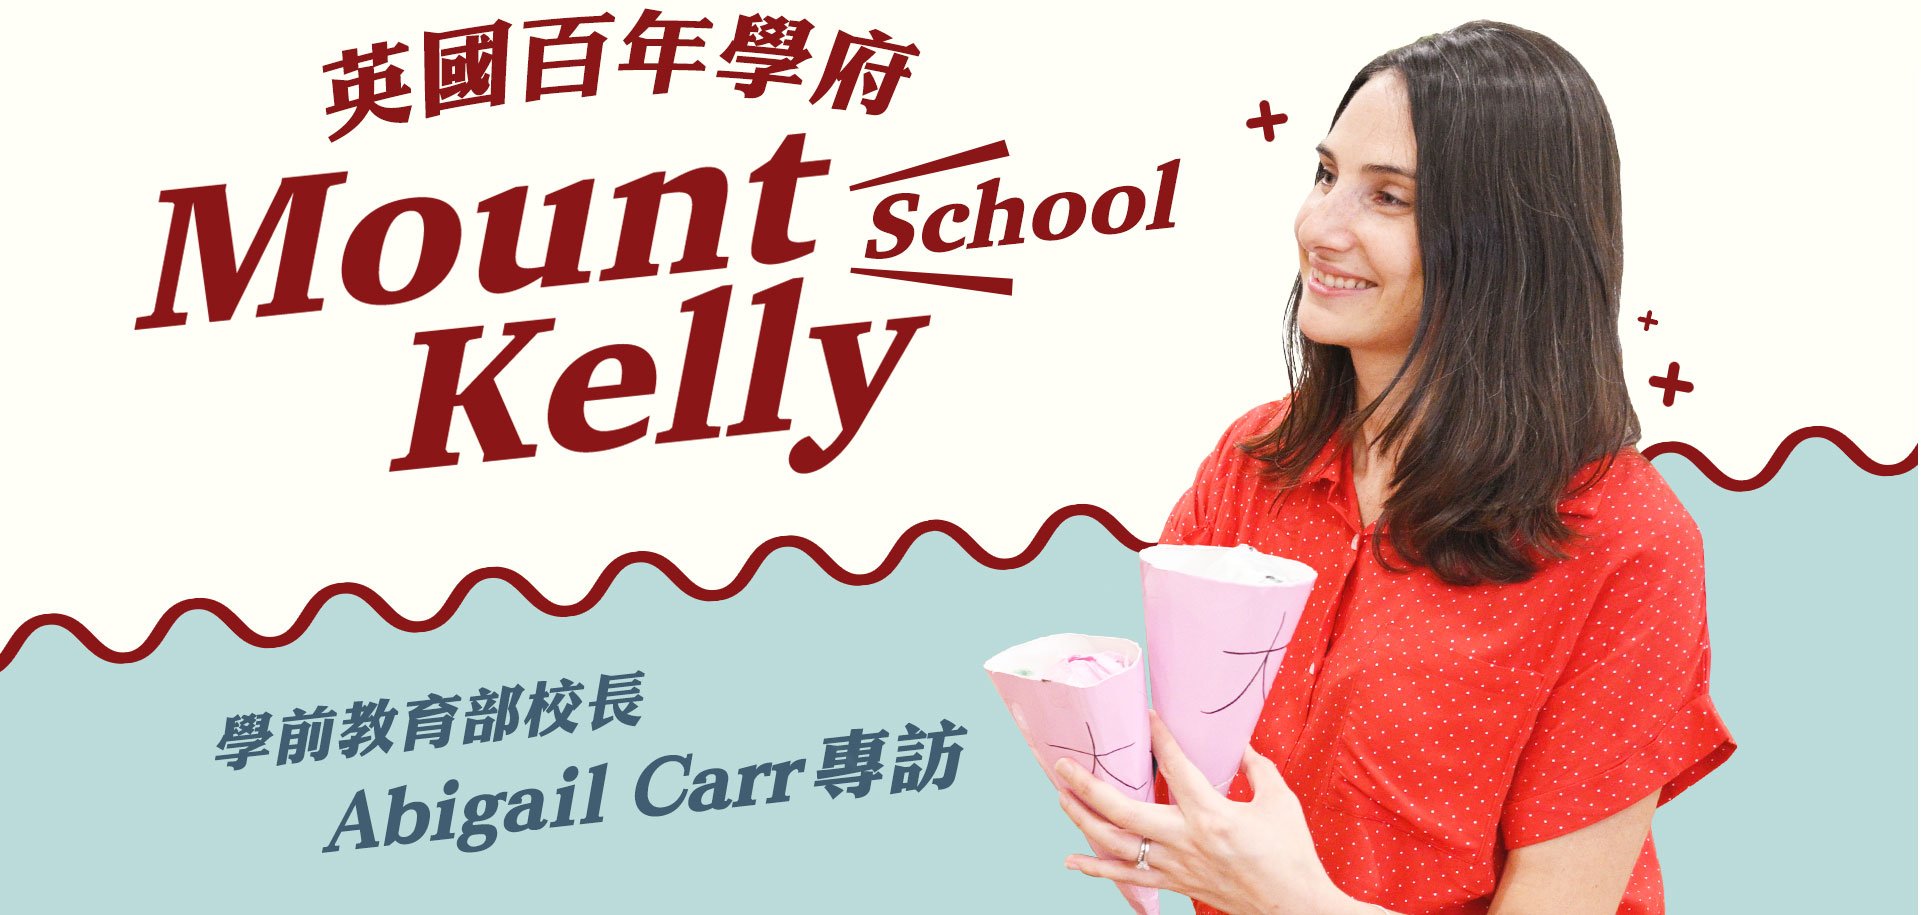 英國百年學府 Mount Kelly School 學前教育部校長 Abigail Carr 專訪